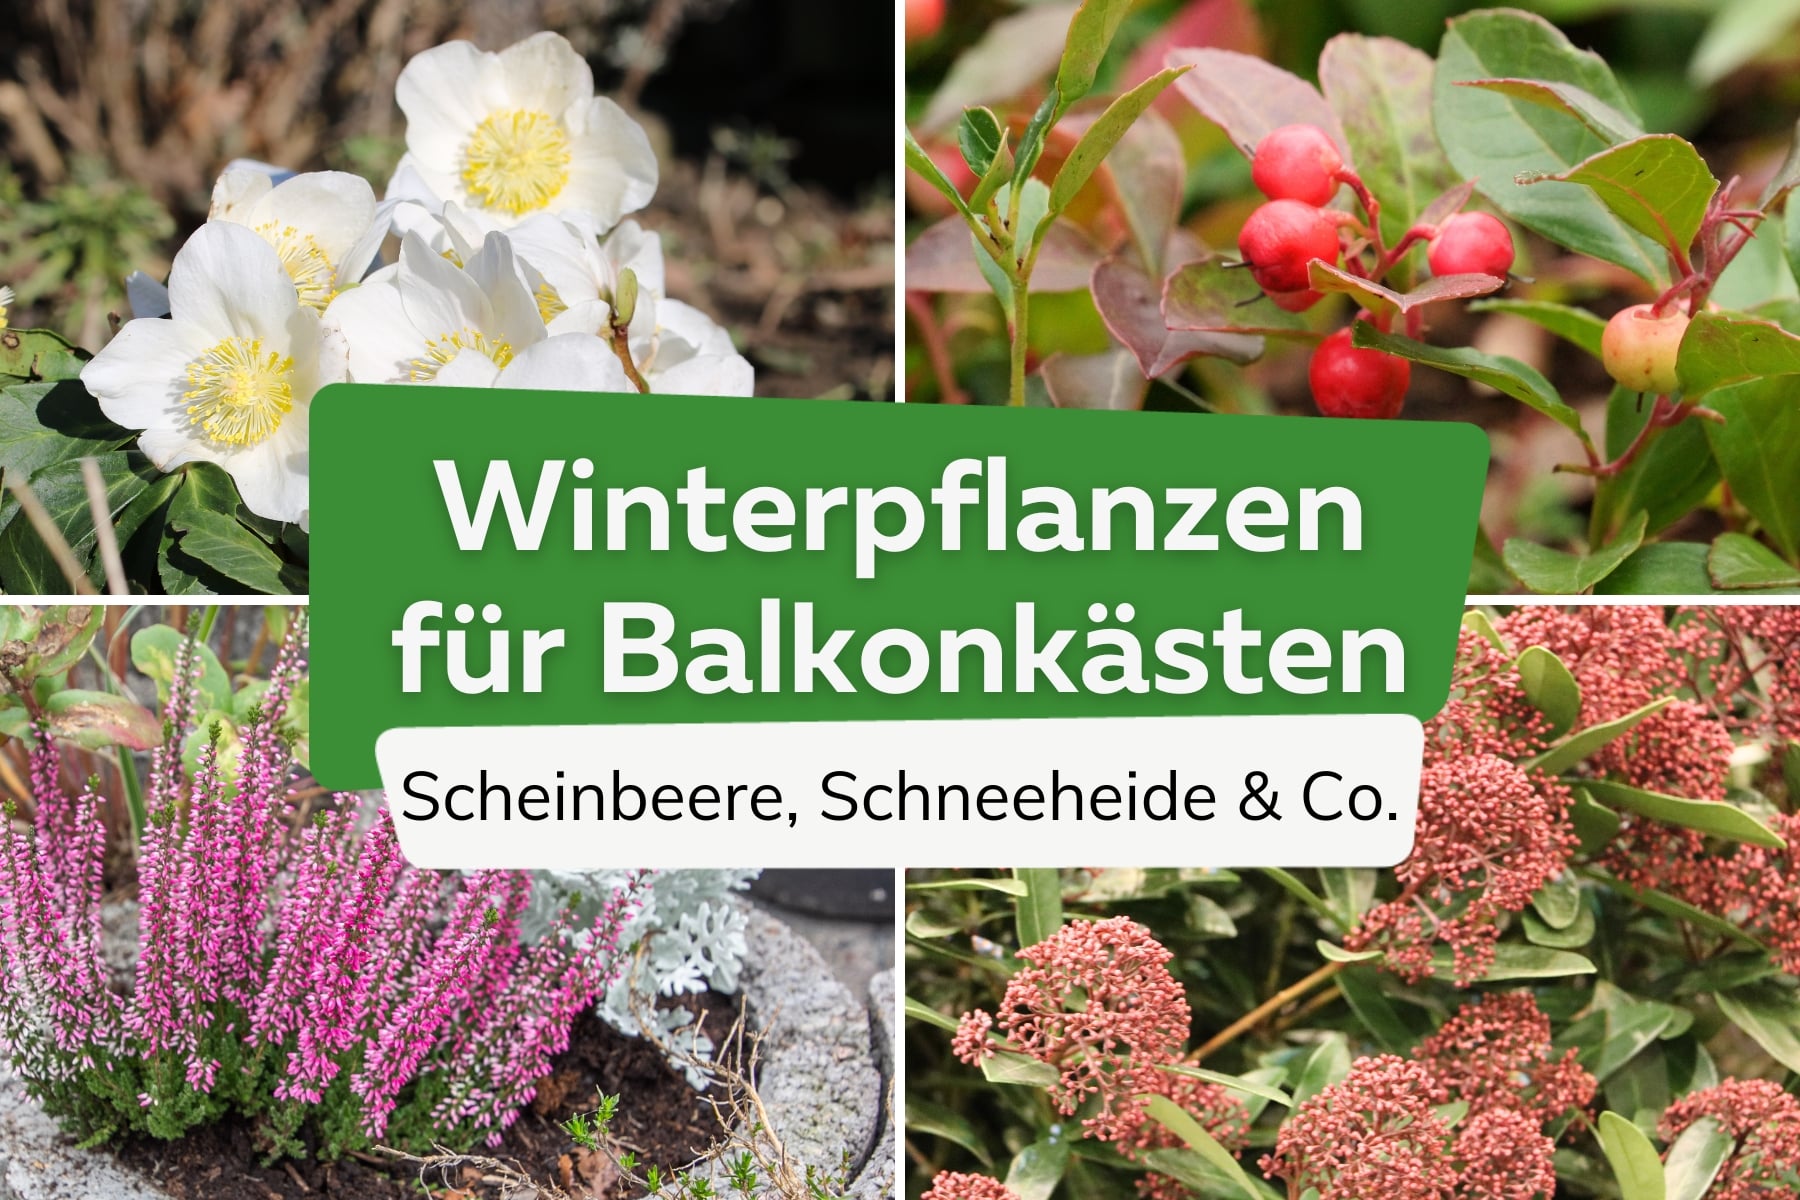 Winterpflanzen für Balkonkästen